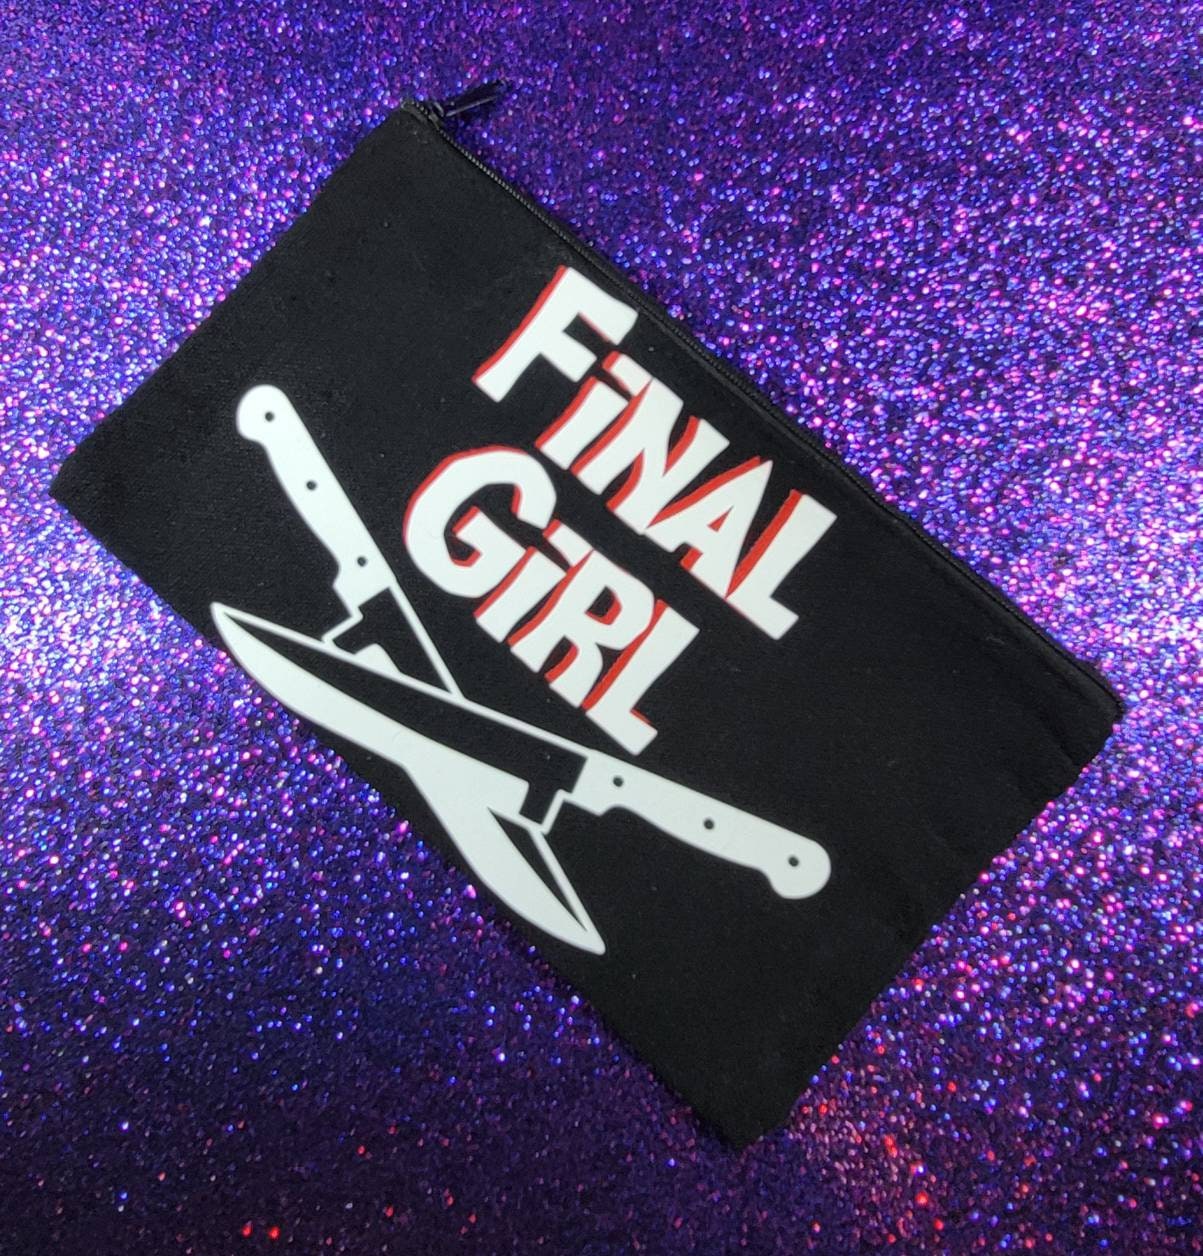 Final Girl Zippered Pouch, Makeup Bag, Pencil Case 4.8"x8.4"